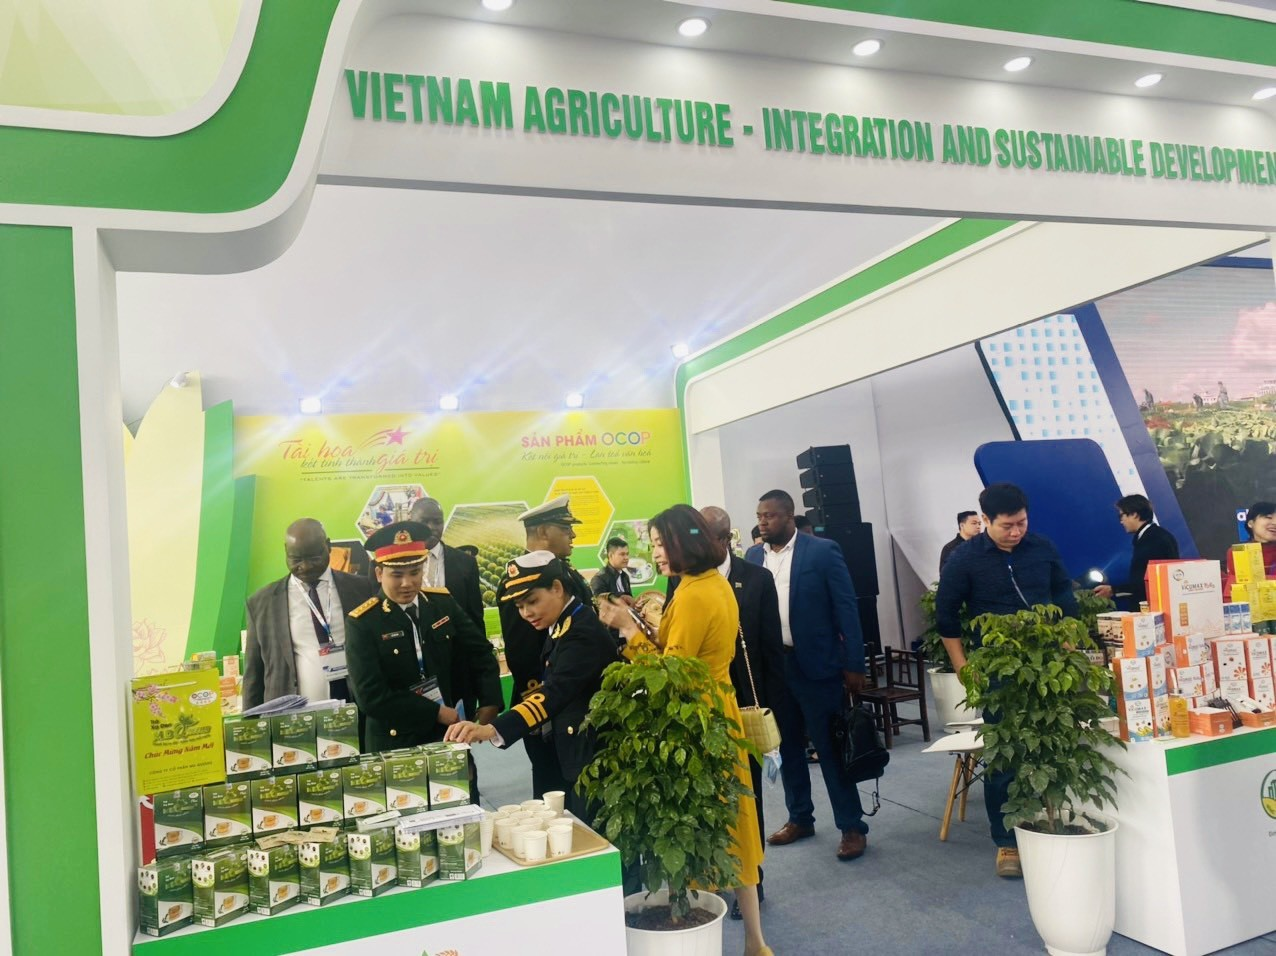 OCOP khởi nghiệp có mặt tại Triển lãm Quốc phòng quốc tế Việt Nam 2022